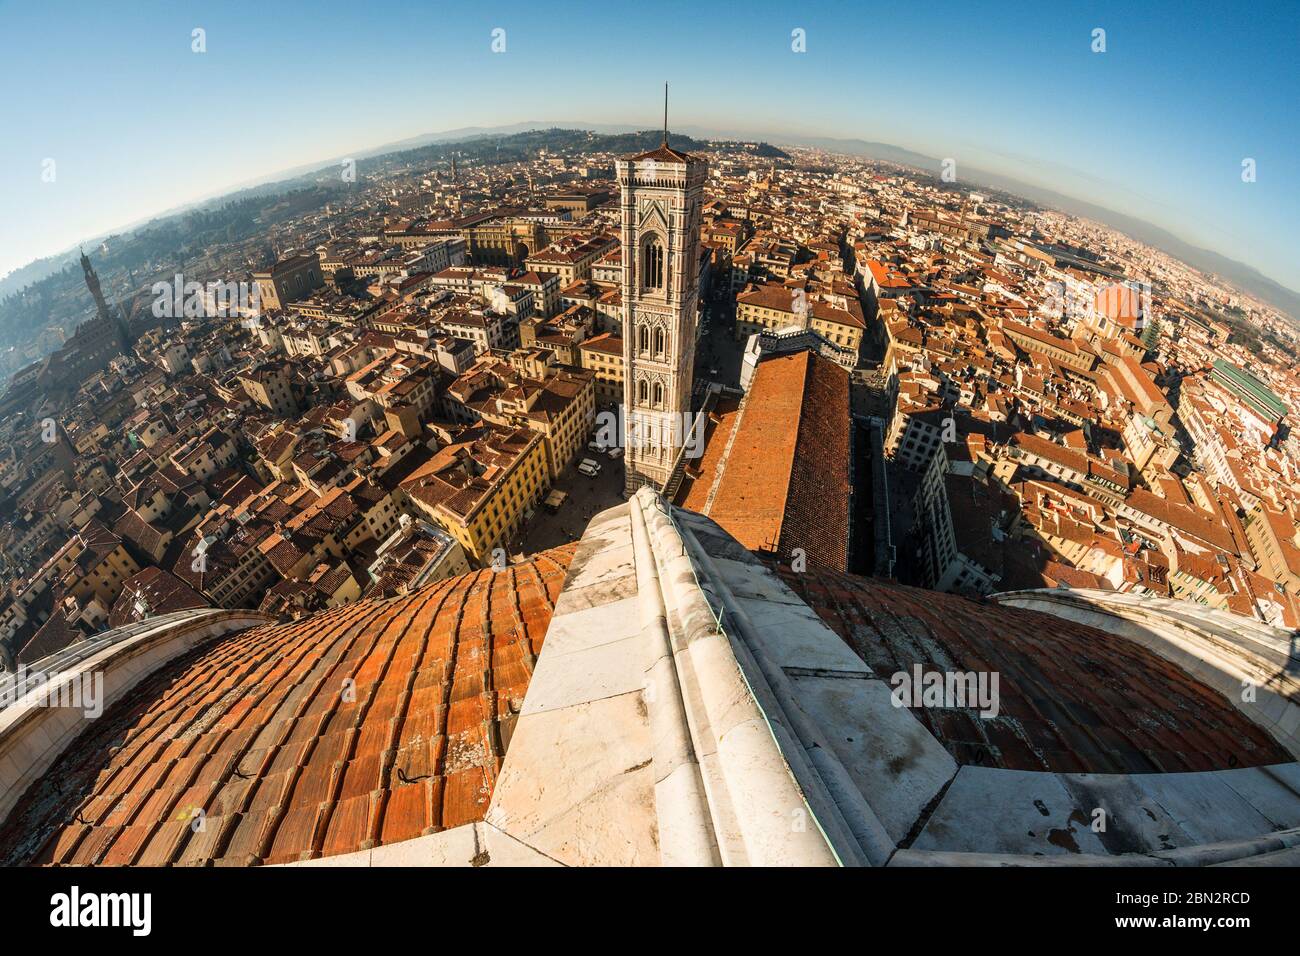 Vue imprenable sur Florence depuis le sommet du dôme de brunelleschi, les toits de la vieille ville et le clocher de Giotto en arrière-plan Banque D'Images